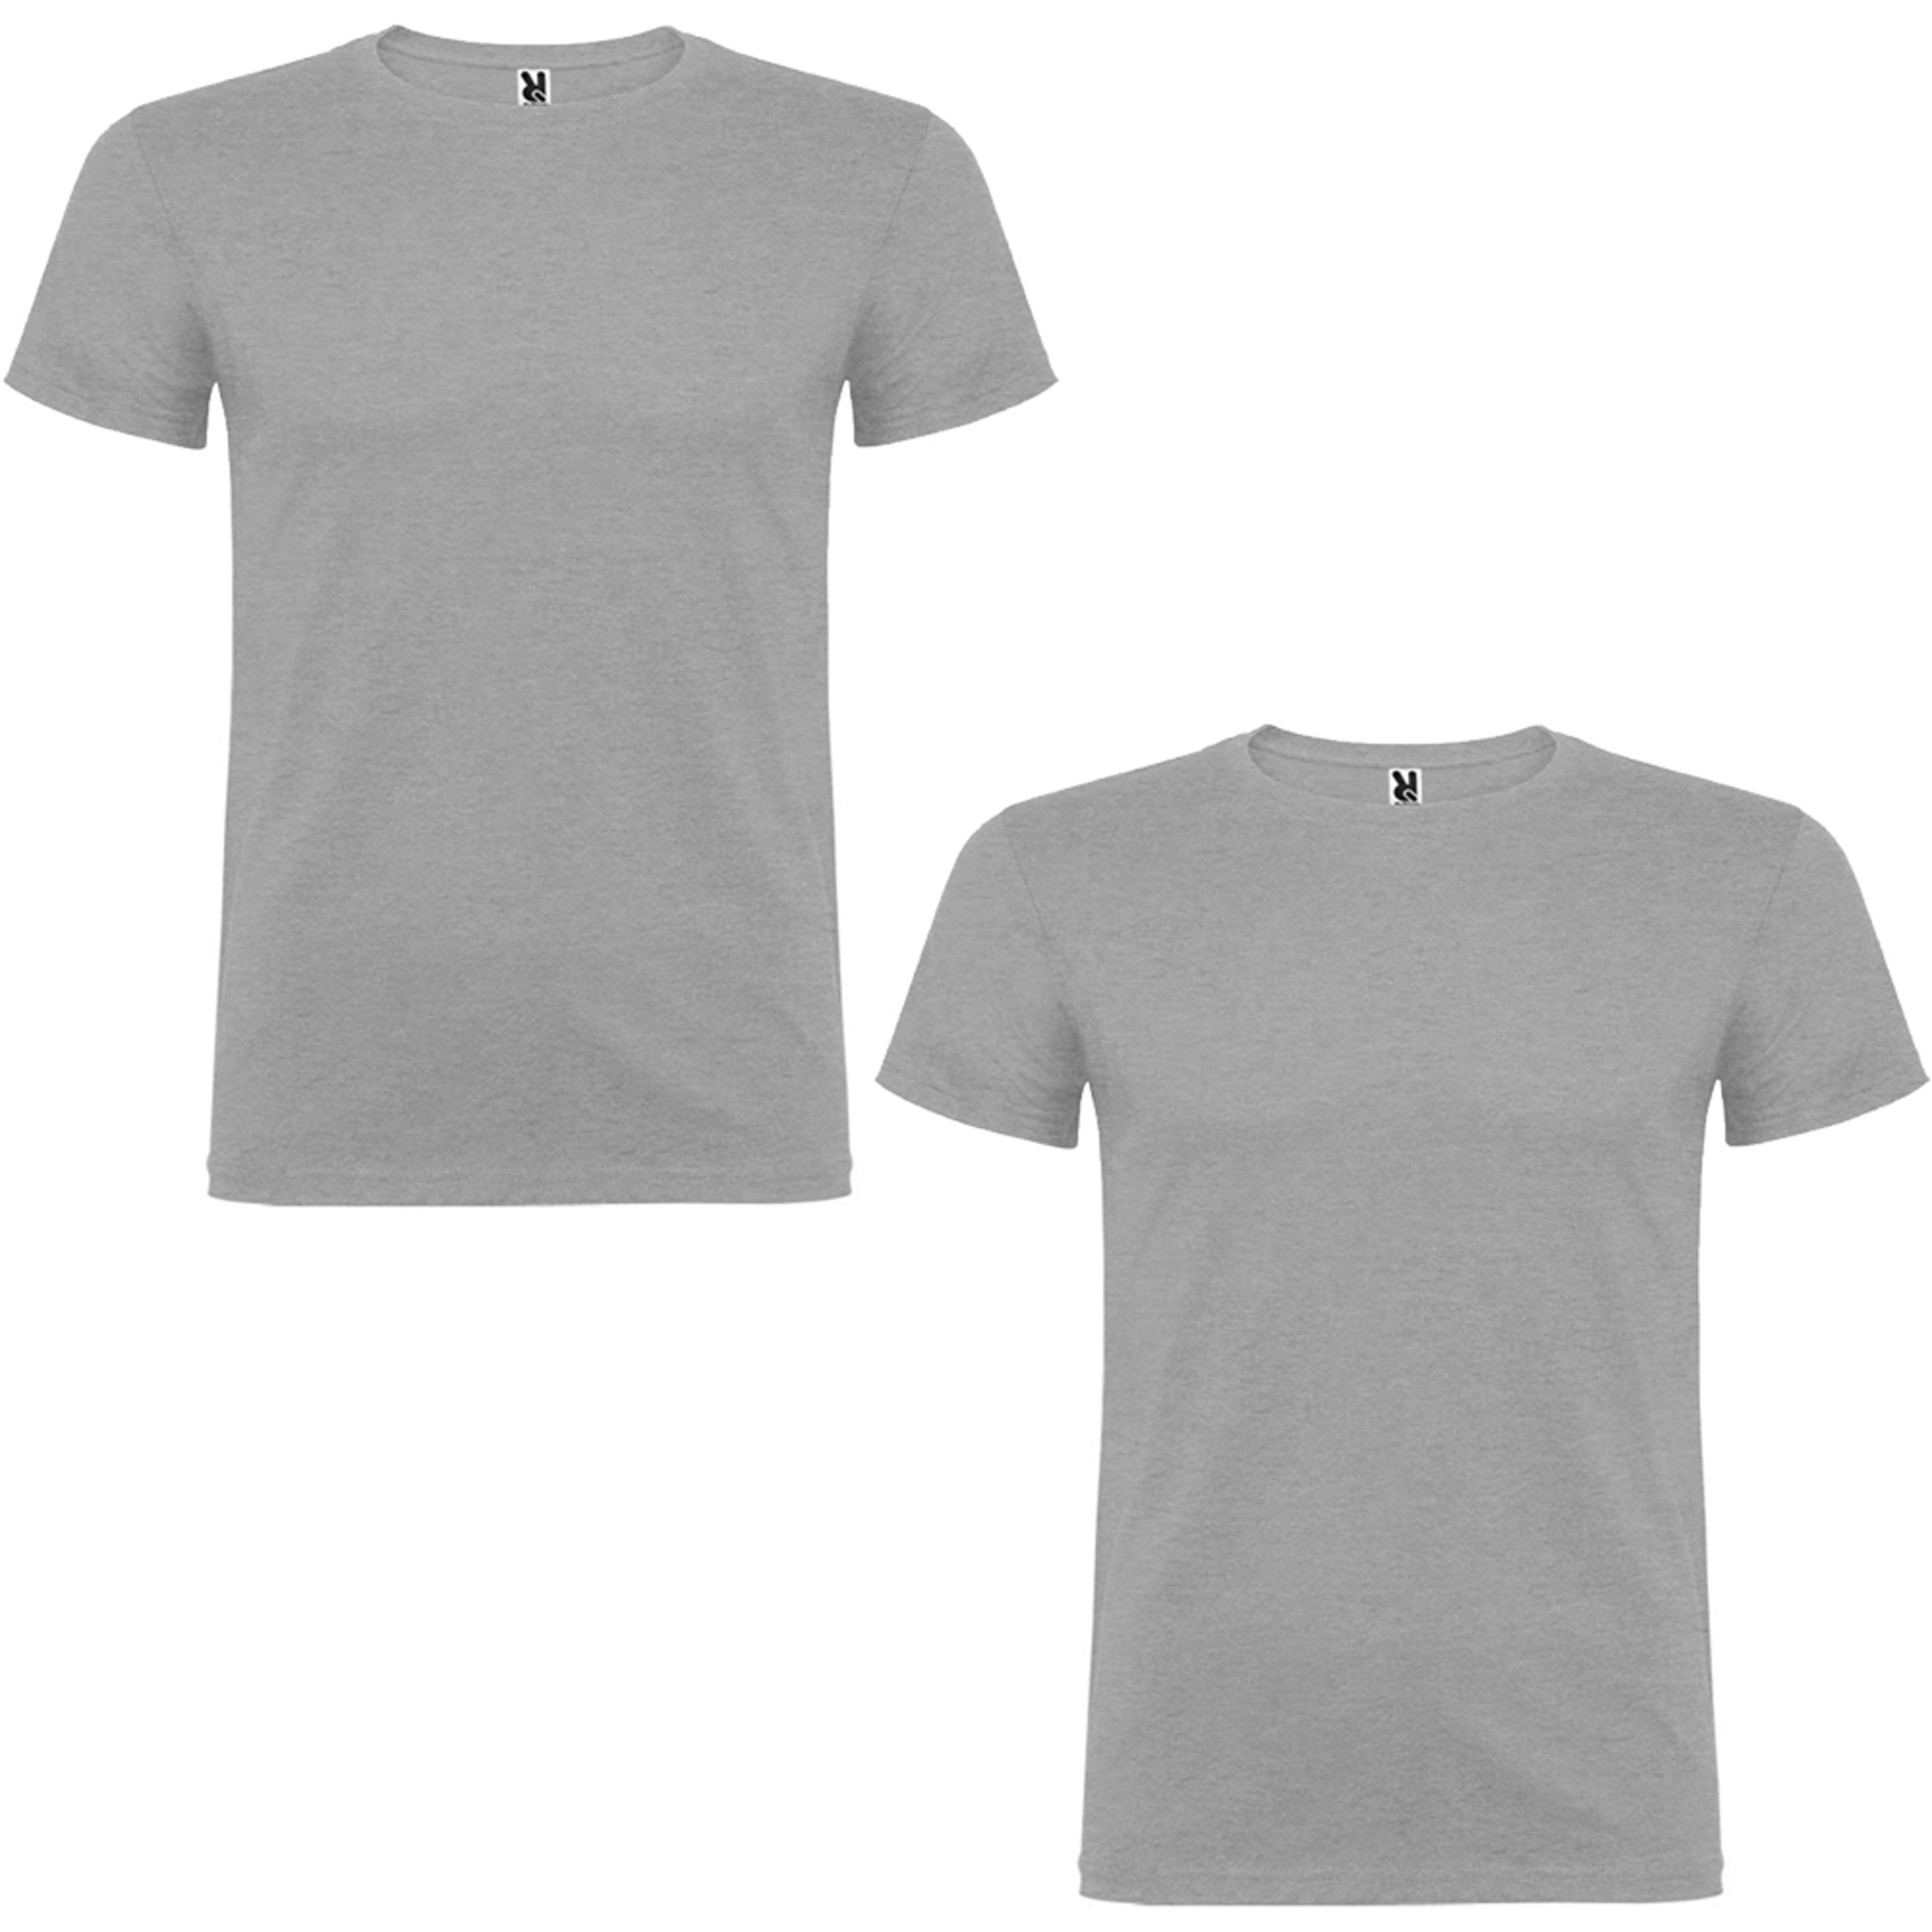 2 Camisetas Manga Corta Roly - gris - 